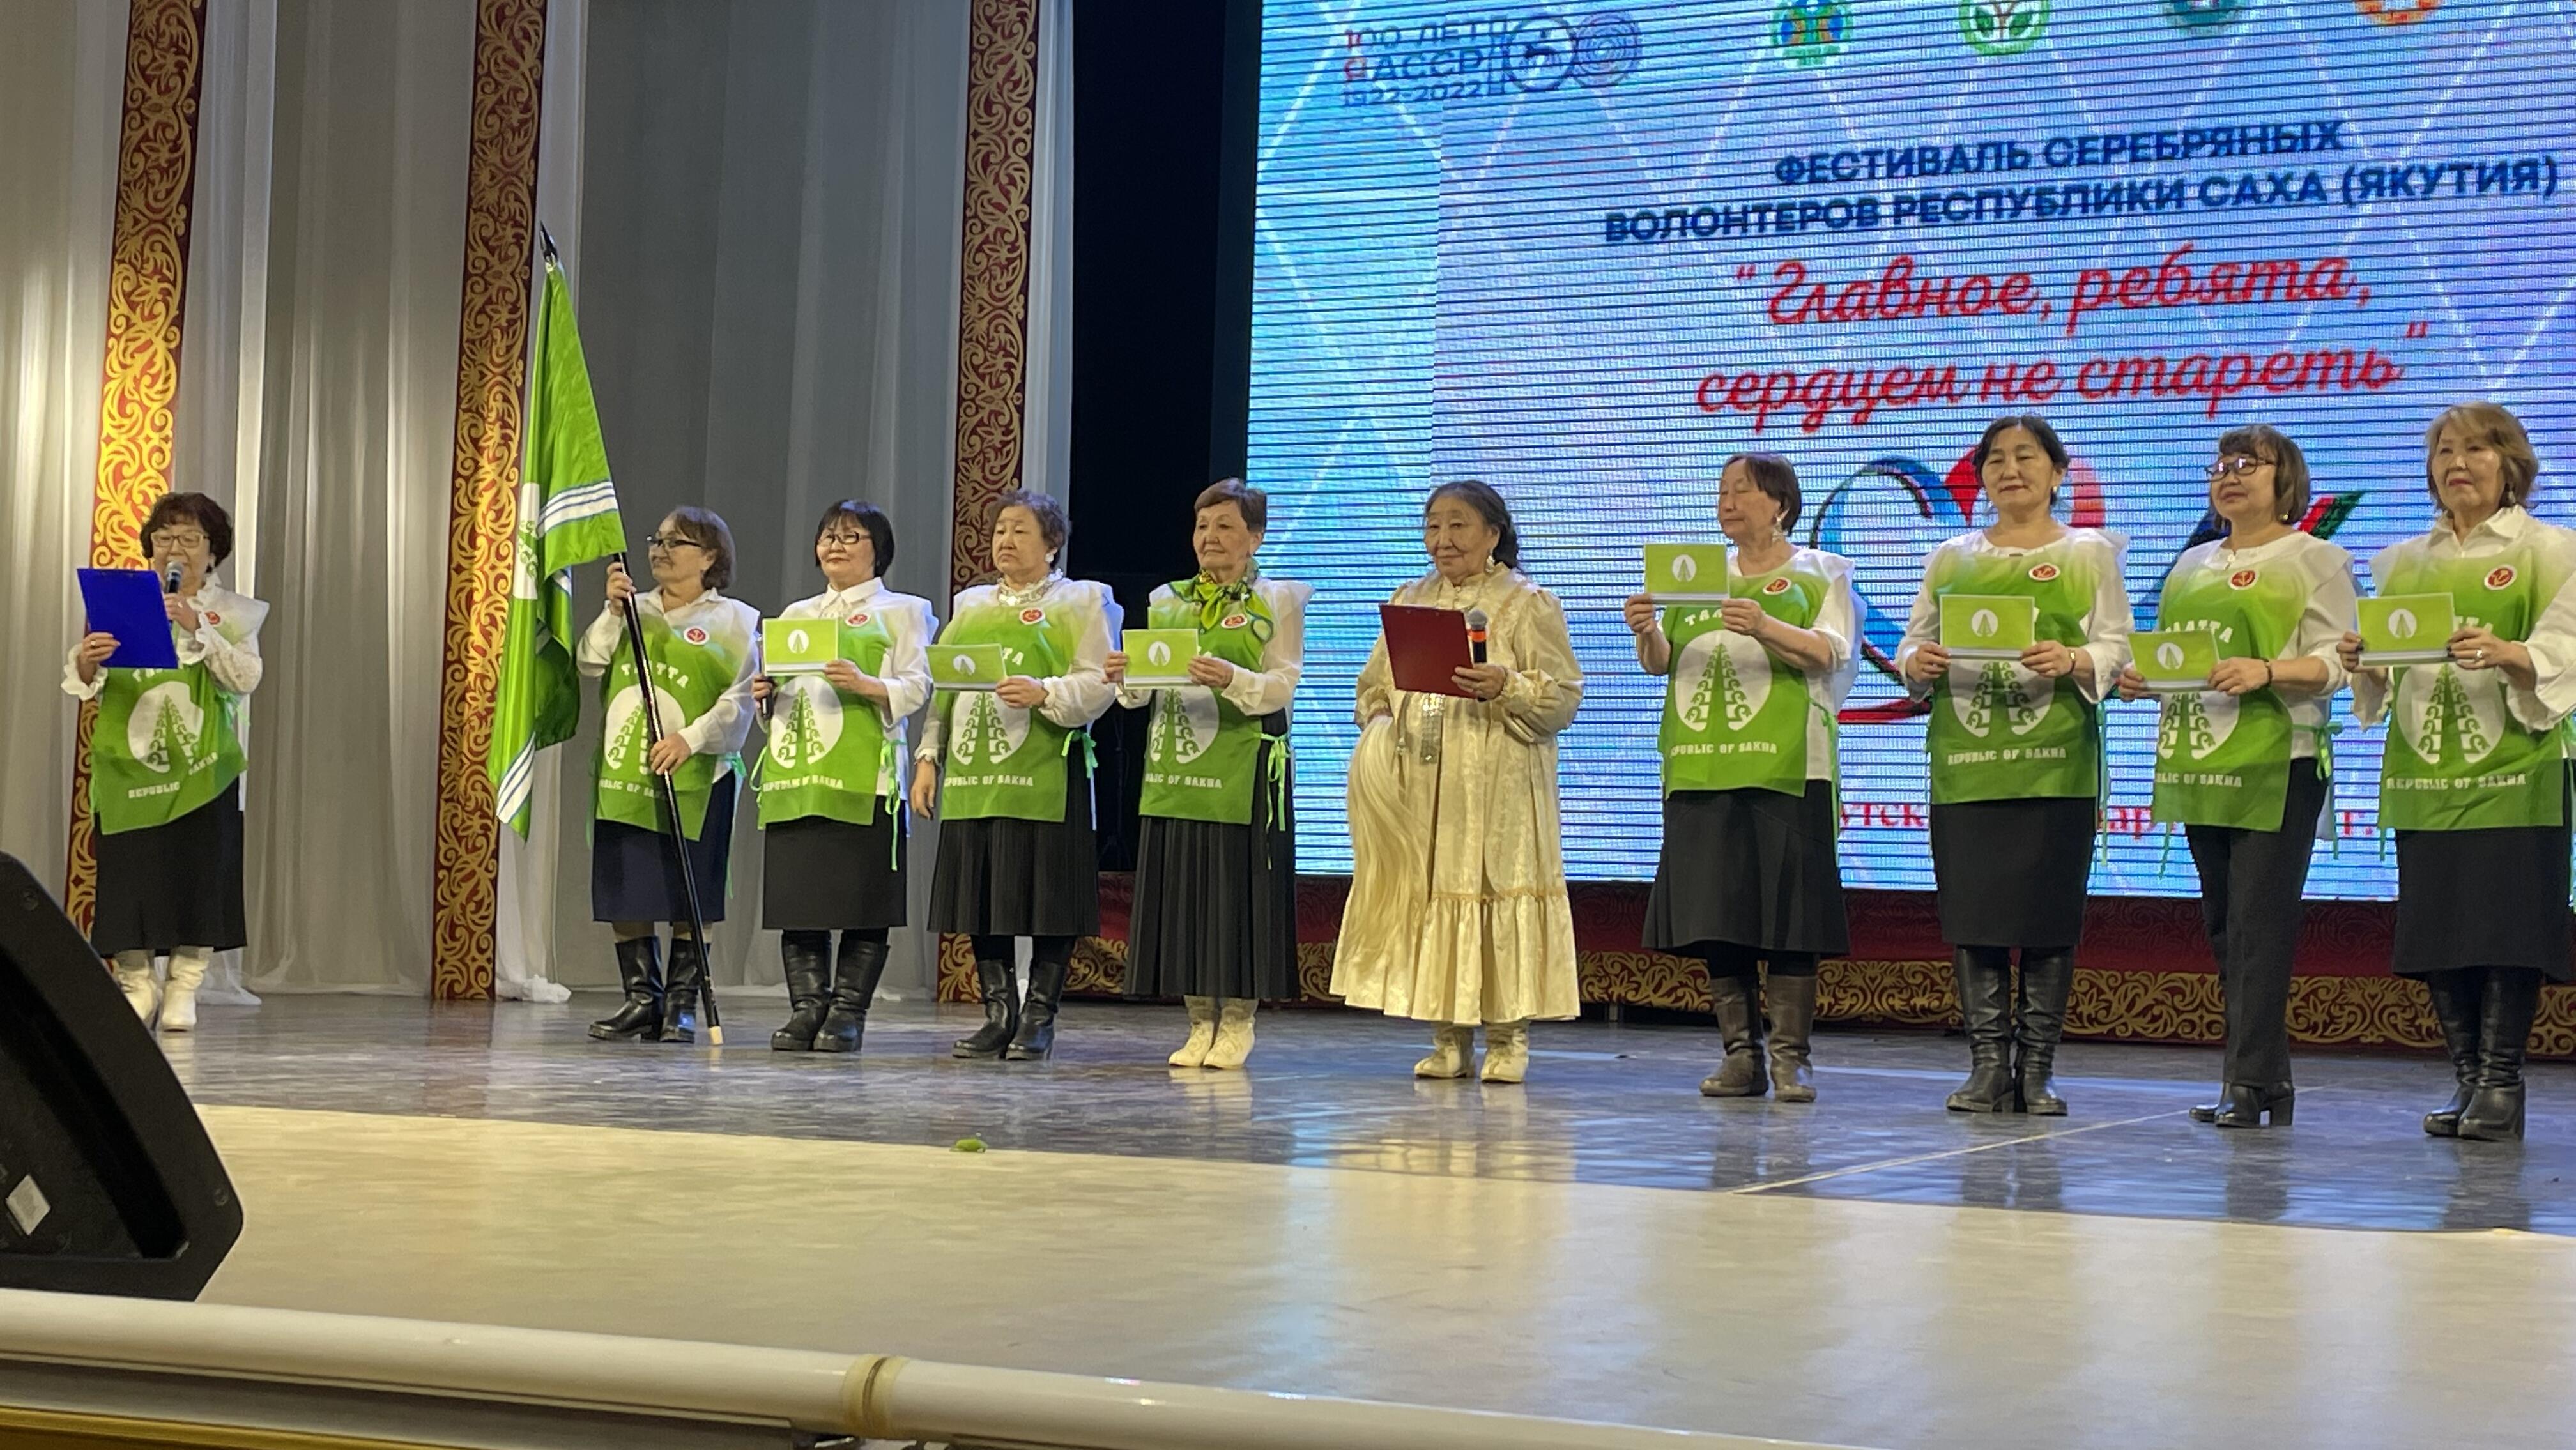 Состоялось открытие I Республиканского фестиваля серебряных волонтёров Республики Саха (Якутия)